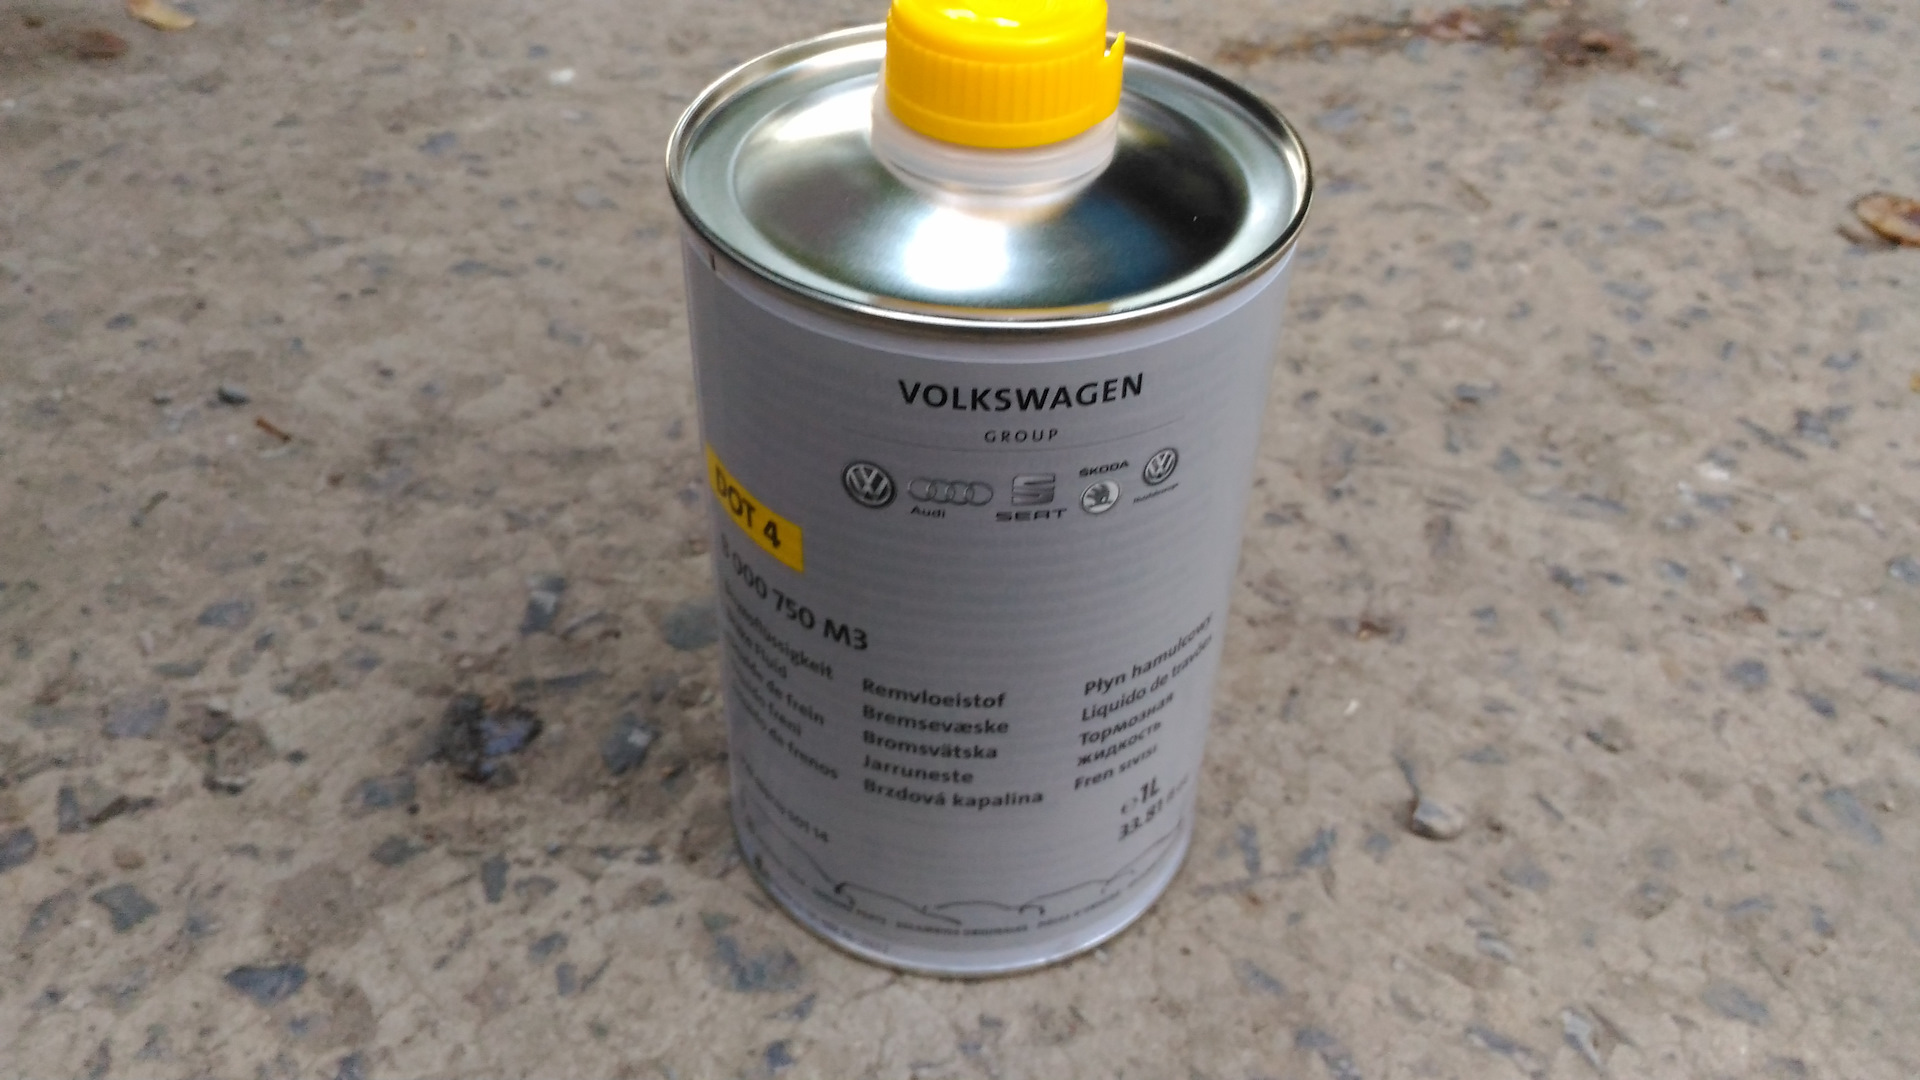 Фольксваген пассат б5 какое масло. B000750m3 тормозная жидкость 60 литров. Тормозная жидкость Фольксваген Пассат в5+. Бачок тормозной жидкости Пассат б5. Тормозная жидкость для Фольксваген Пассат б6.